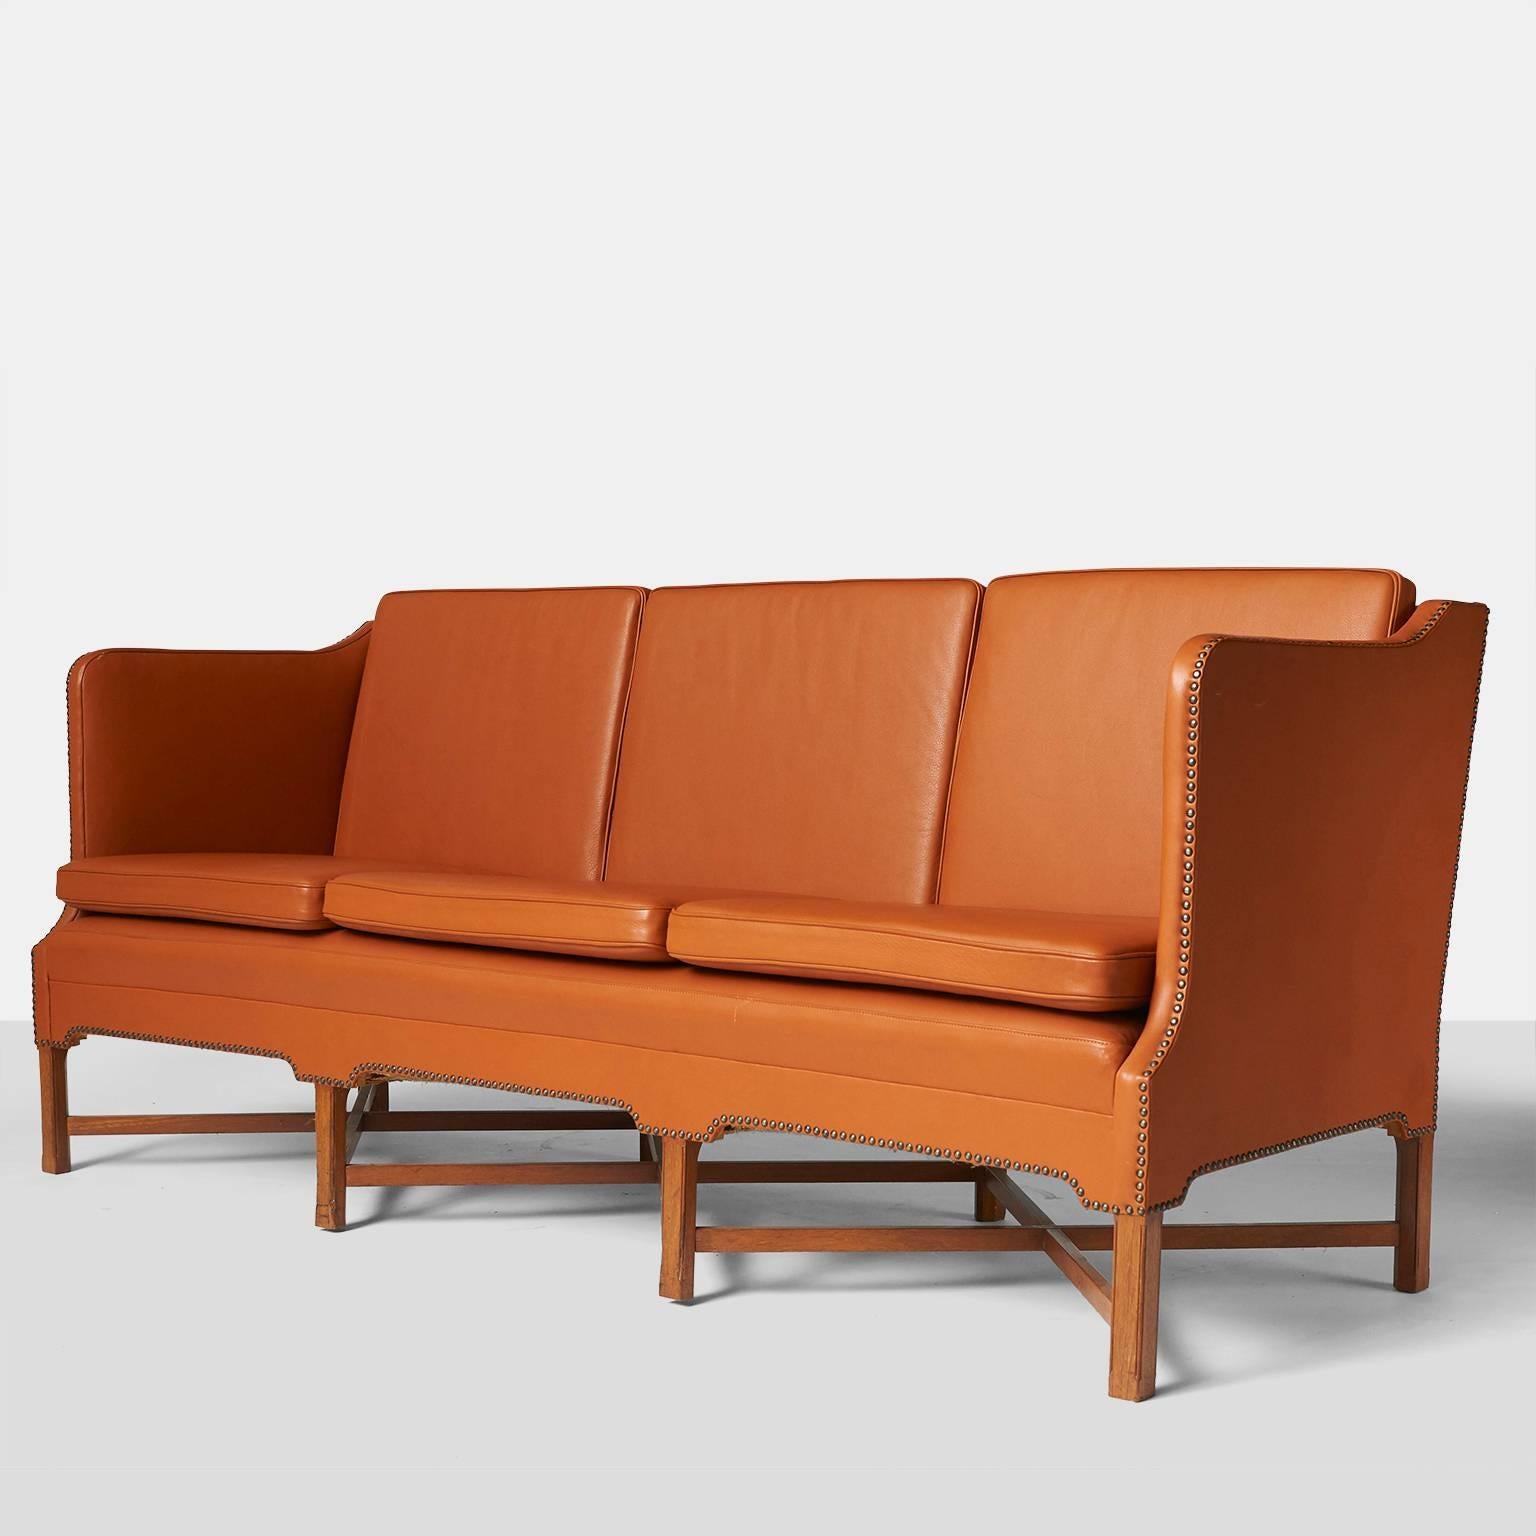 A three seat sofa model #4118 in mahogany with 